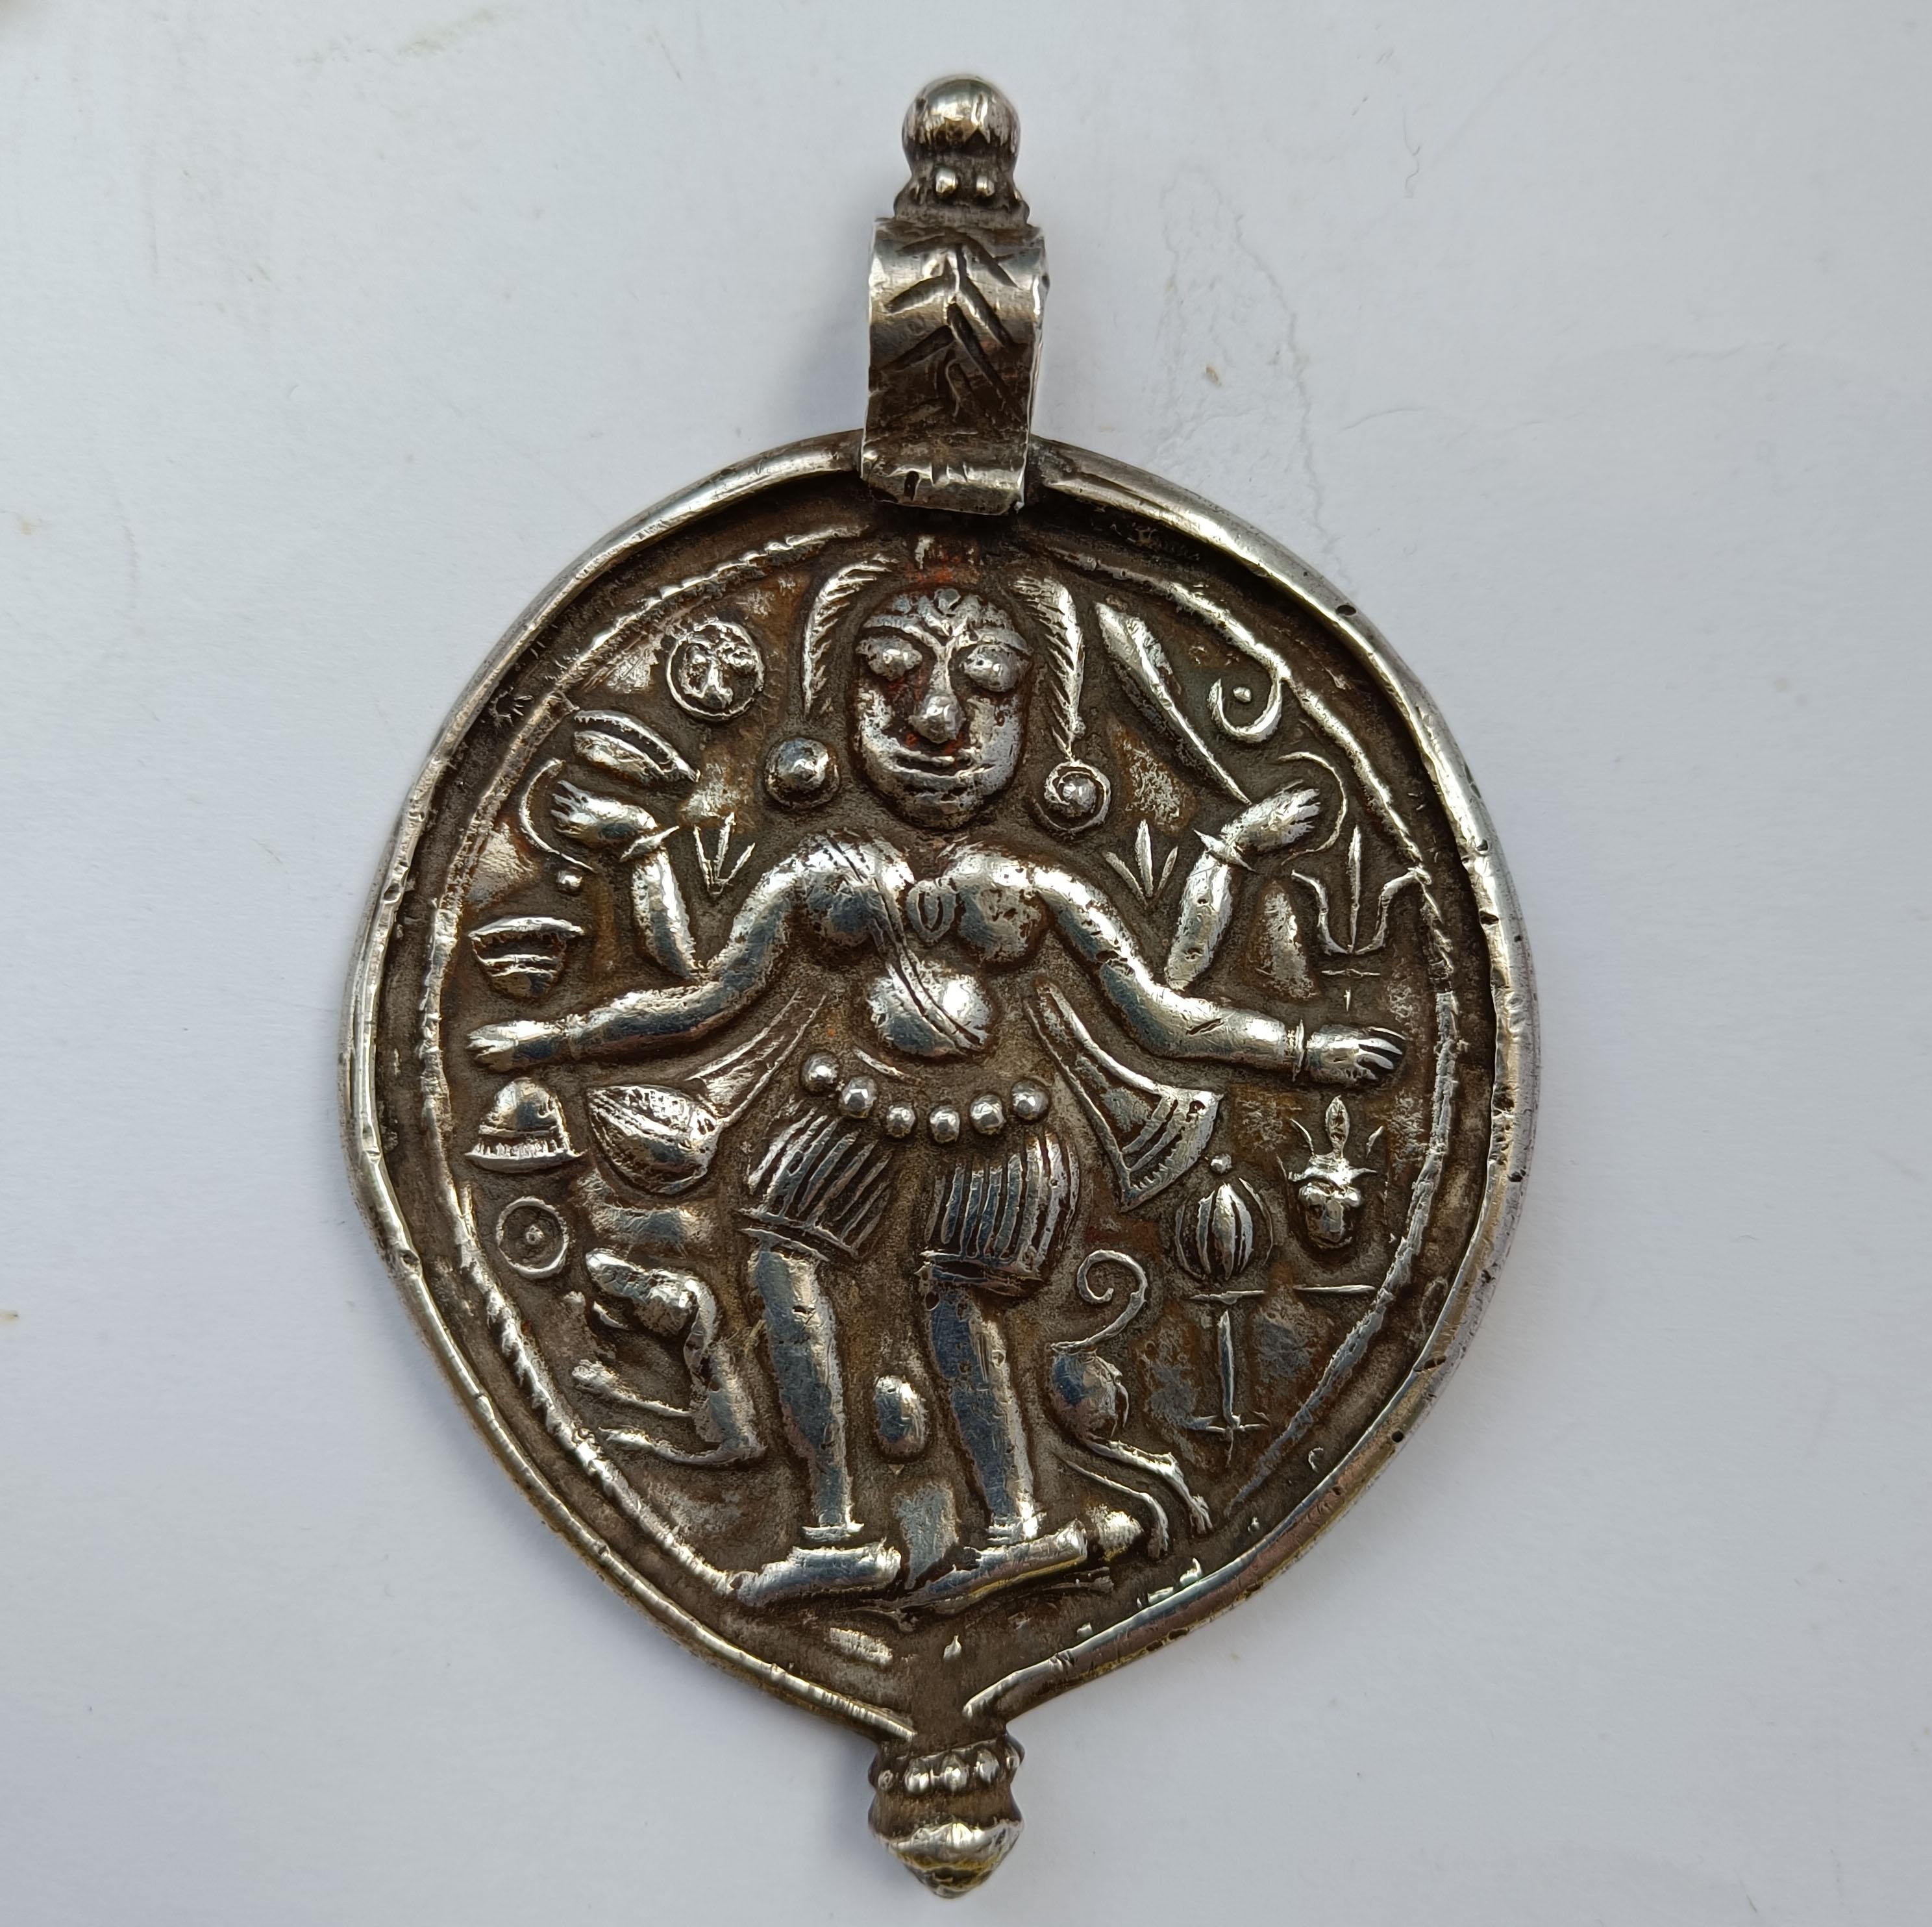 Grand pendentif amulette indienne hindoue en argent, rare et ancienne
Période 19ème siècle
Argent lourd de haute qualité  
Longueur du pendentif 11 x 7,5   cm  poids 65 grammes
Condit : Très bon.

 
 
